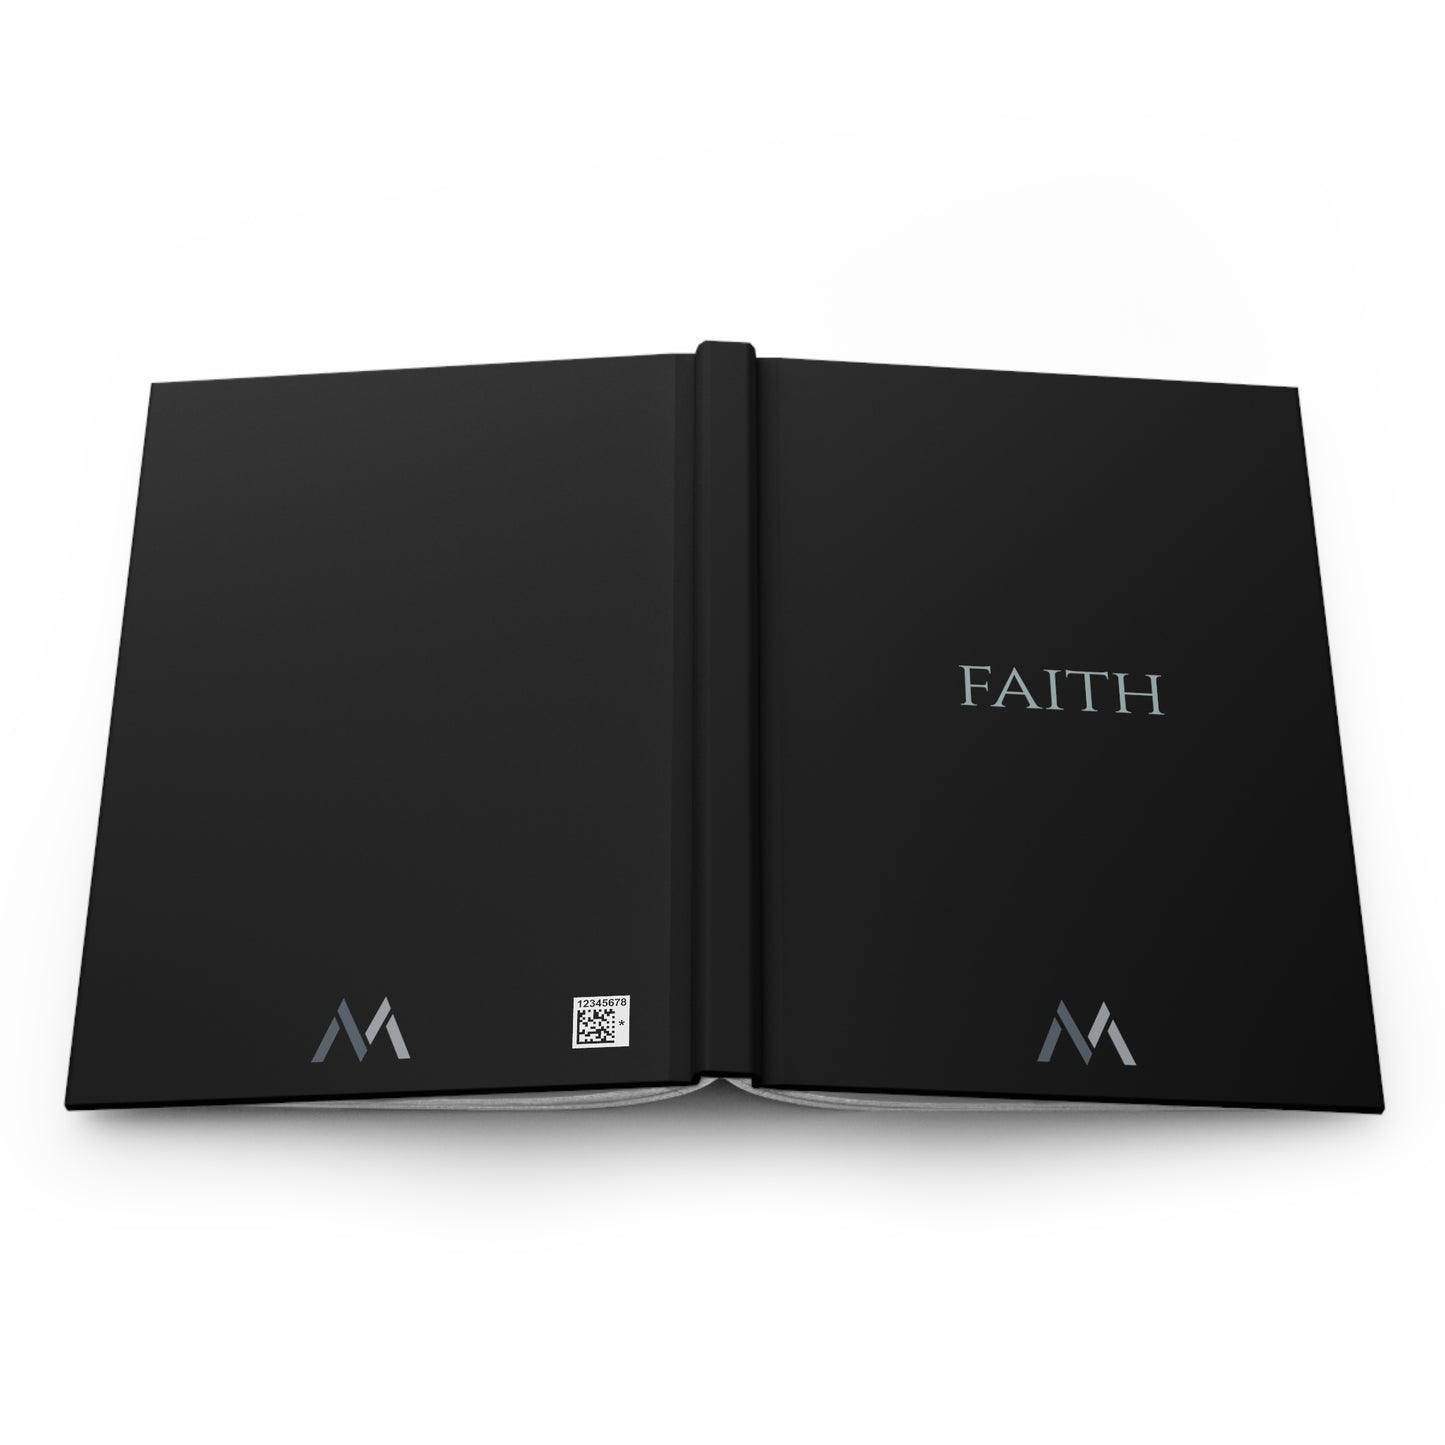 "FAITH" Hard Cover Matte Black Journal